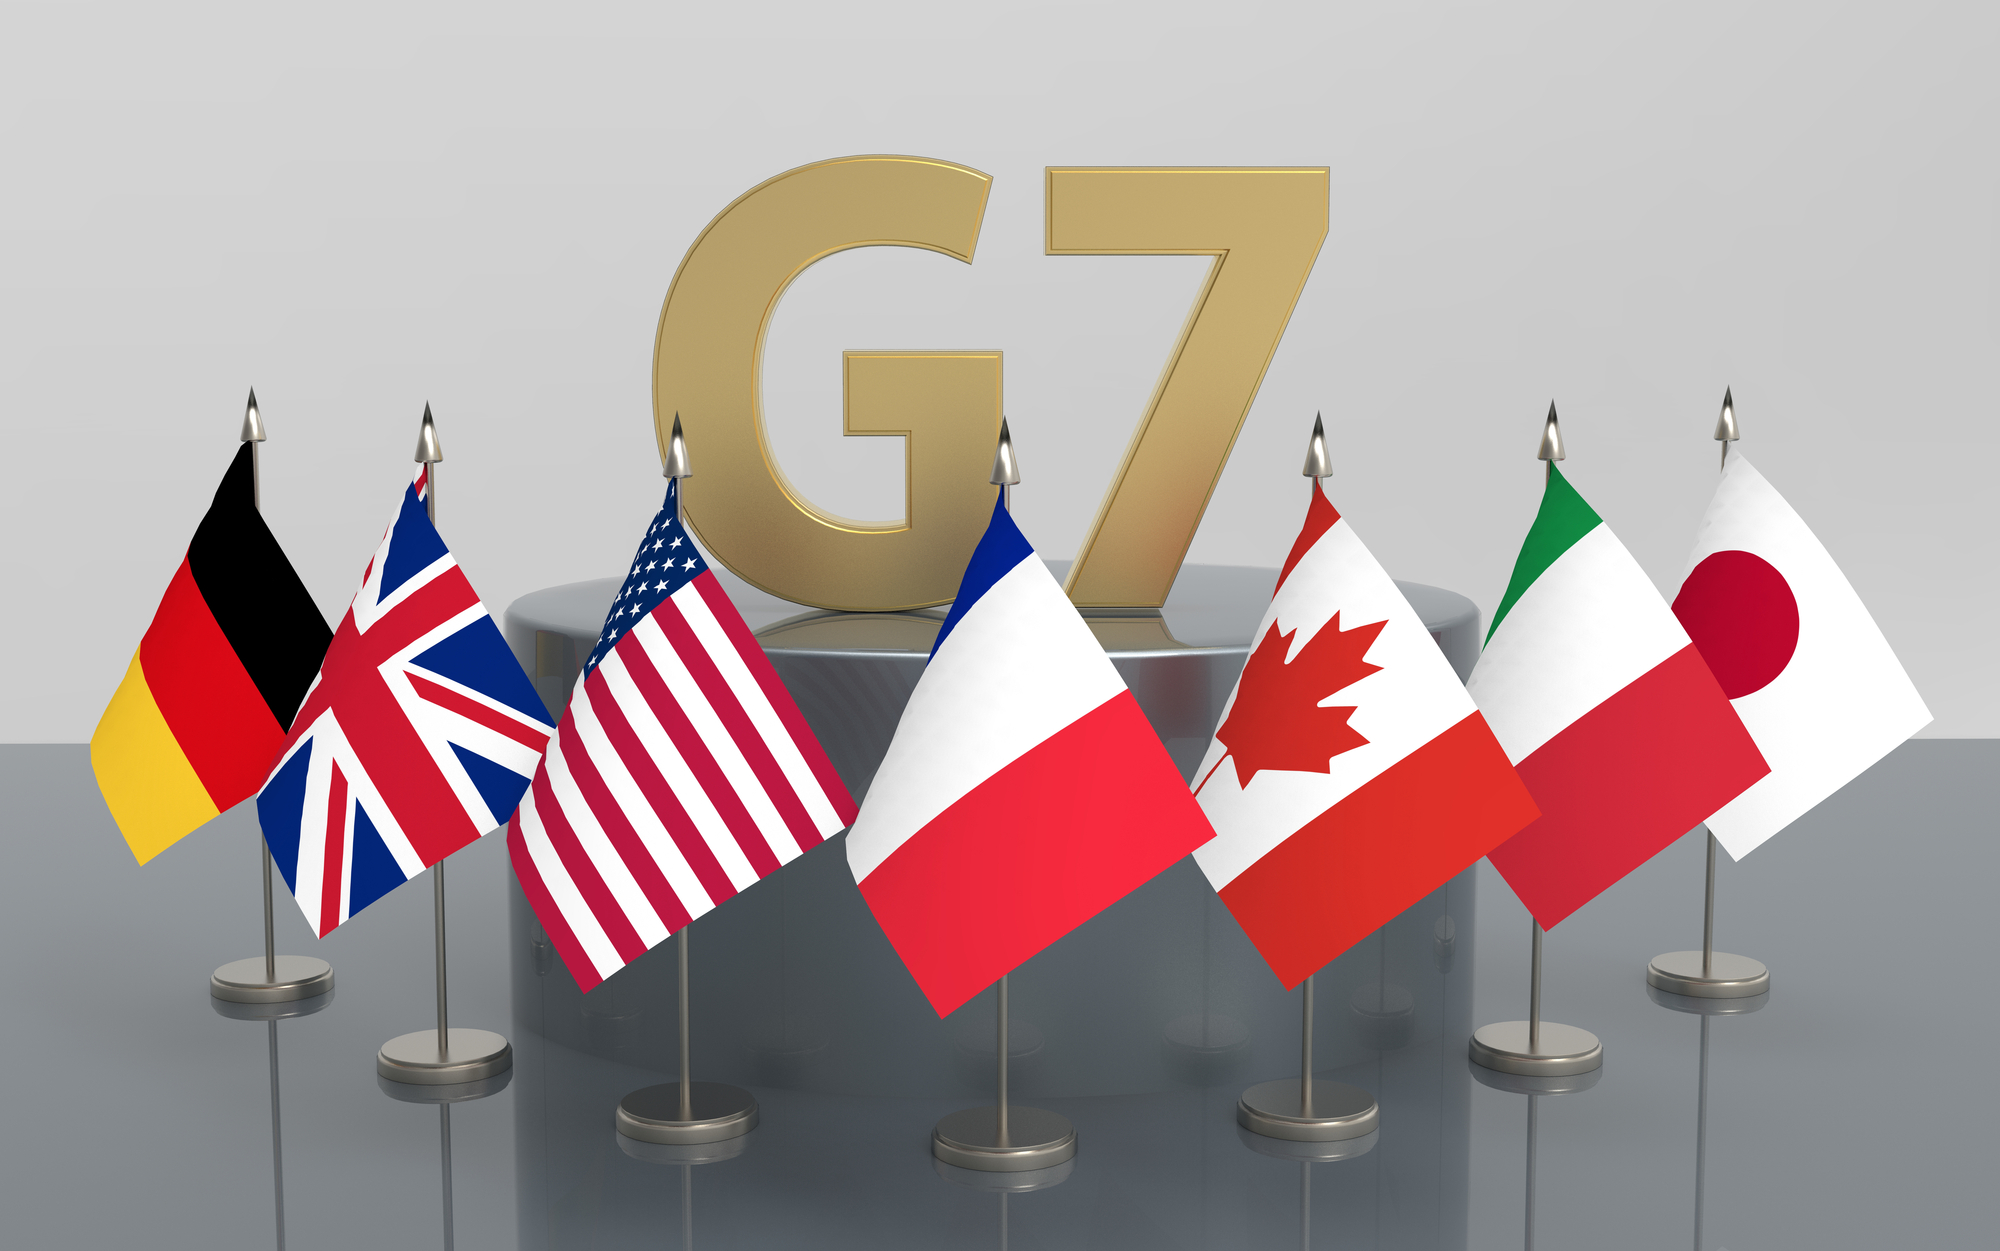 Міністри енергетики країн G7 відкинули вимогу путіна про те, щоб платити за газ рублями